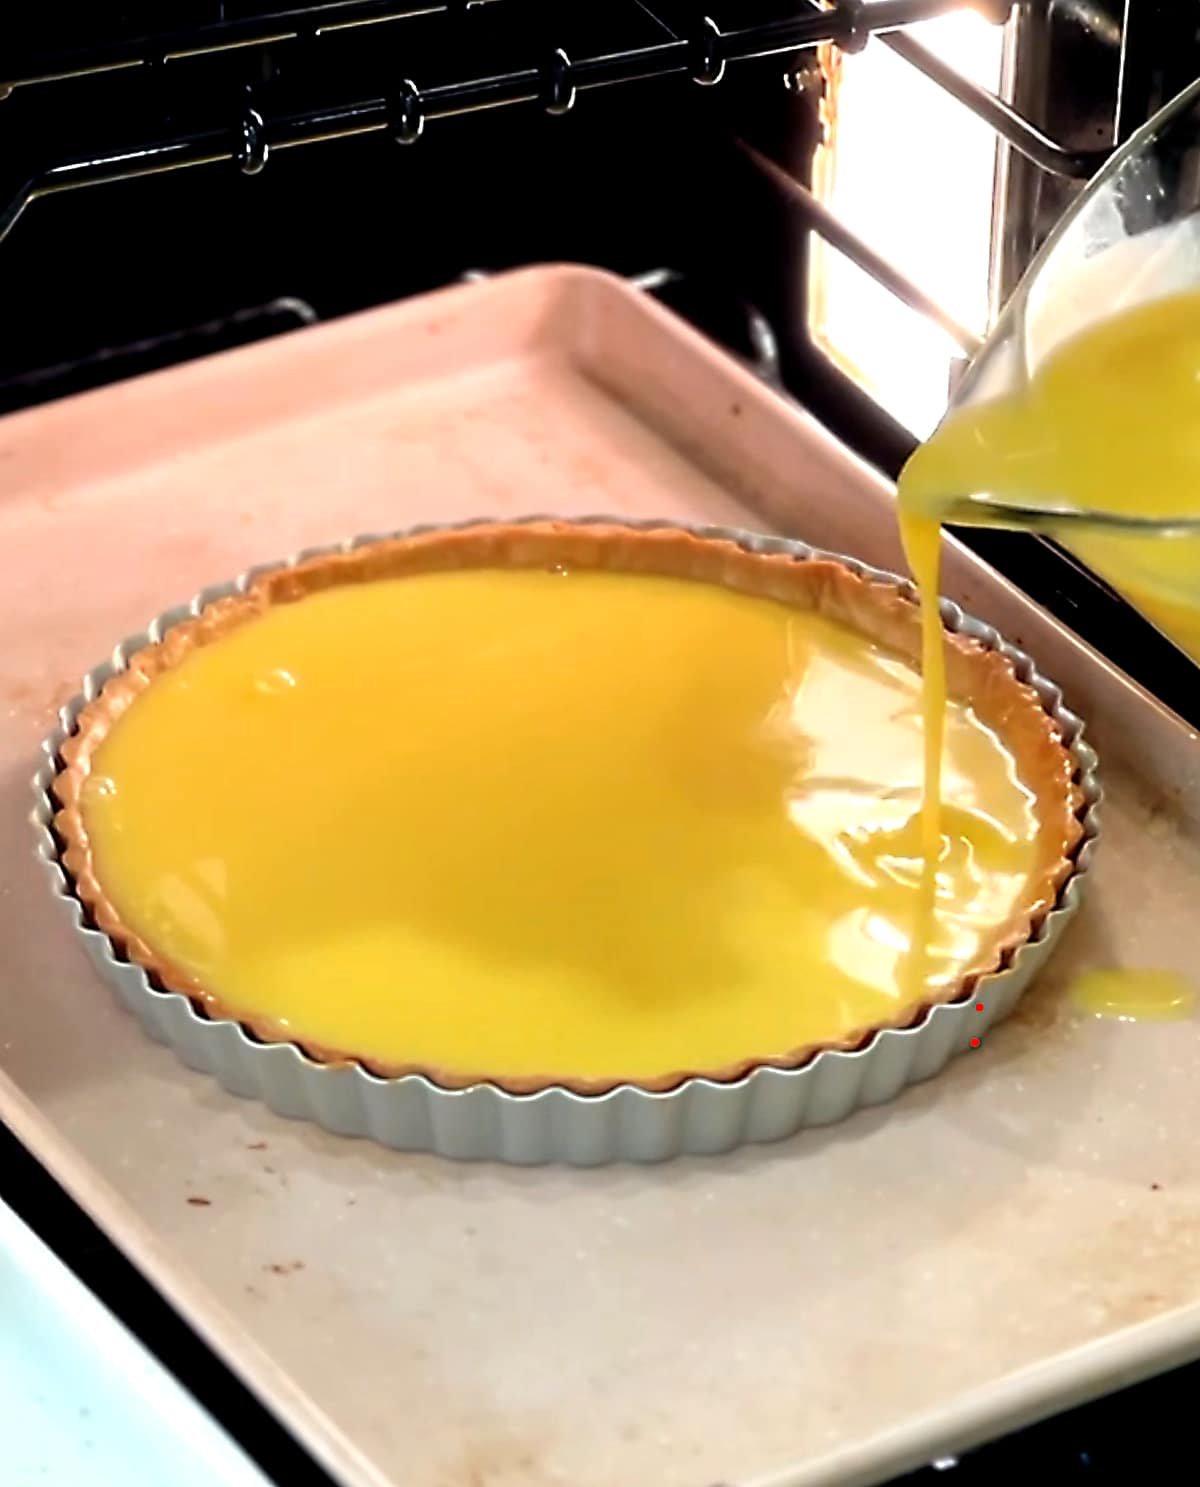 pouring lemon filling into blind baked tart shell in the oven